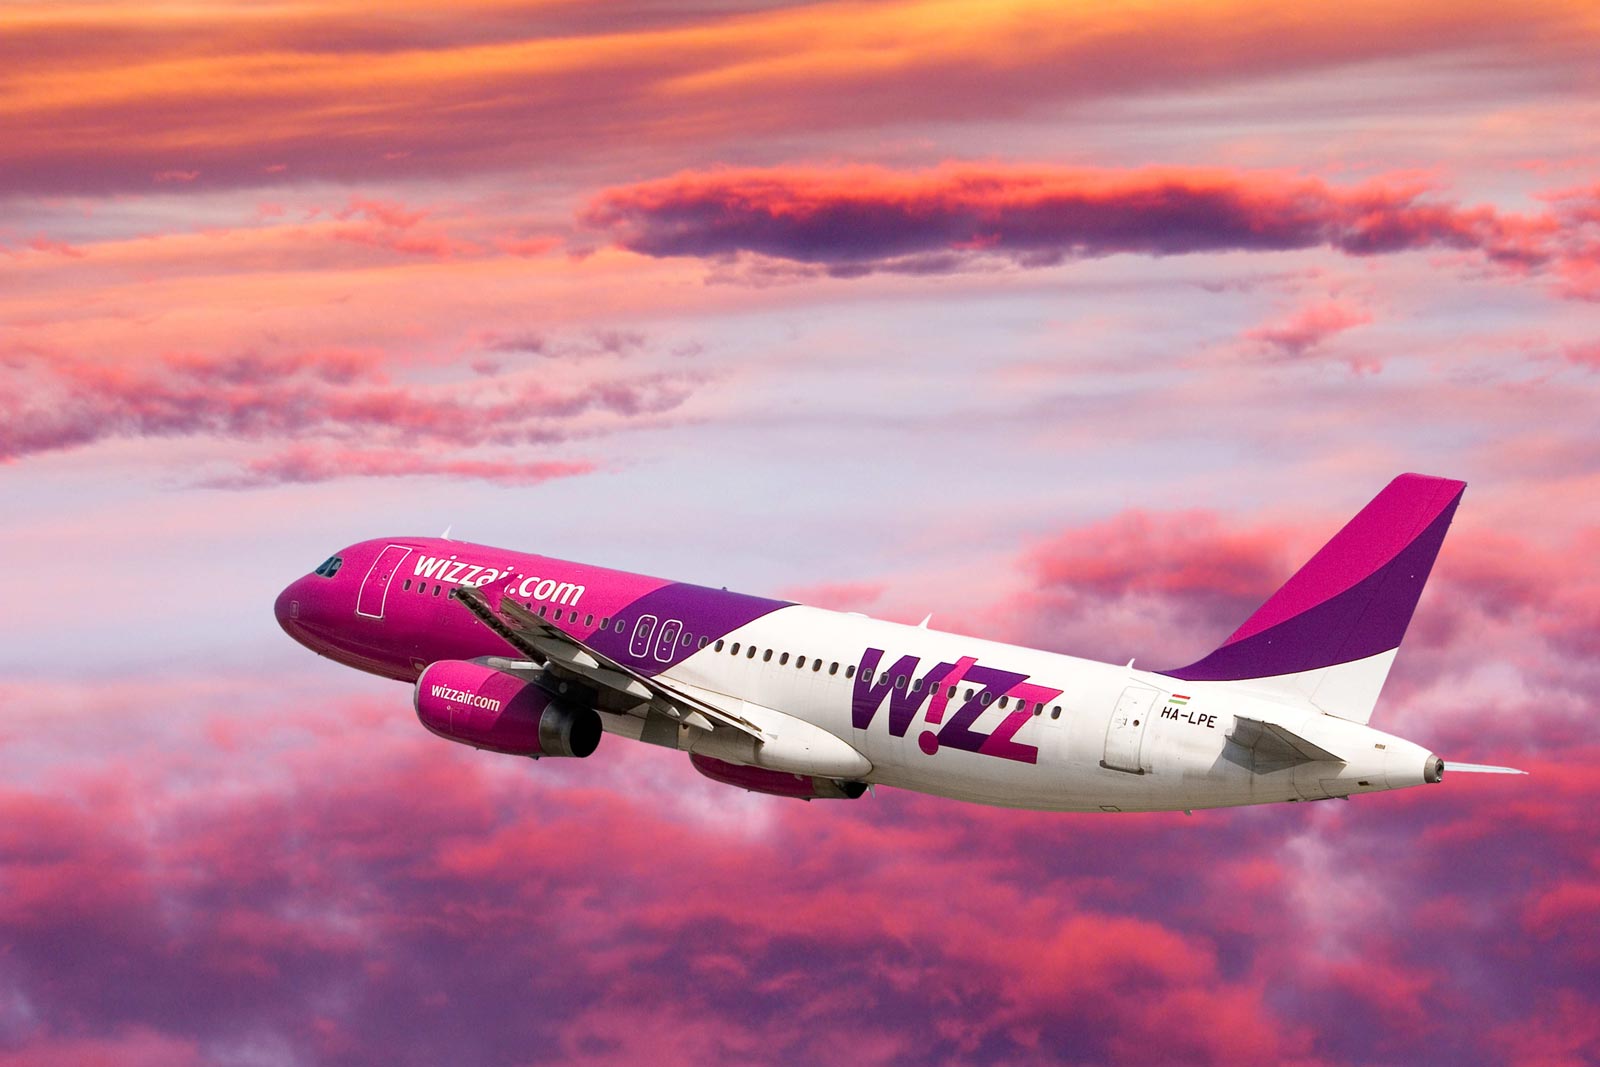 Akce Wizz – 20 % sleva na všechny lety – Londýn 614 Kč, Benátky 614 Kč, Řím 774 Kč